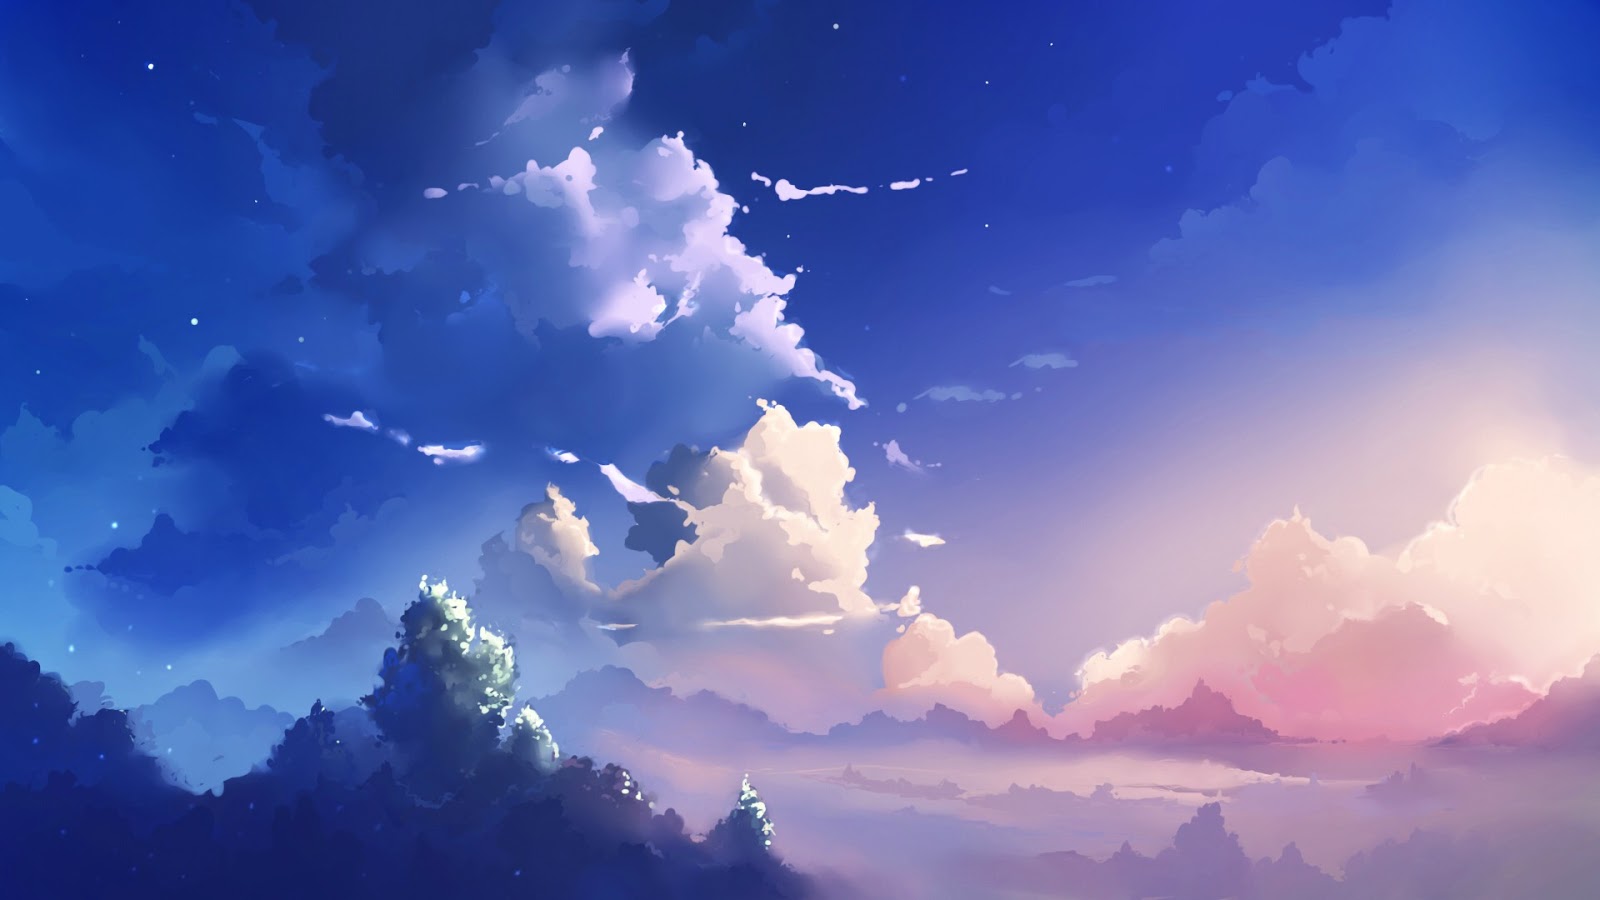 Tải ngay miễn phí hình nền Anime Landscape Sky Anime Landscape [1600x900] để có cơ hội trải nghiệm những dòng anime đang rất được yêu thích hiện nay. Hình ảnh giàu cảm xúc với hậu trường mây trời tuyệt đẹp, sẽ làm bạn choáng ngợp. 